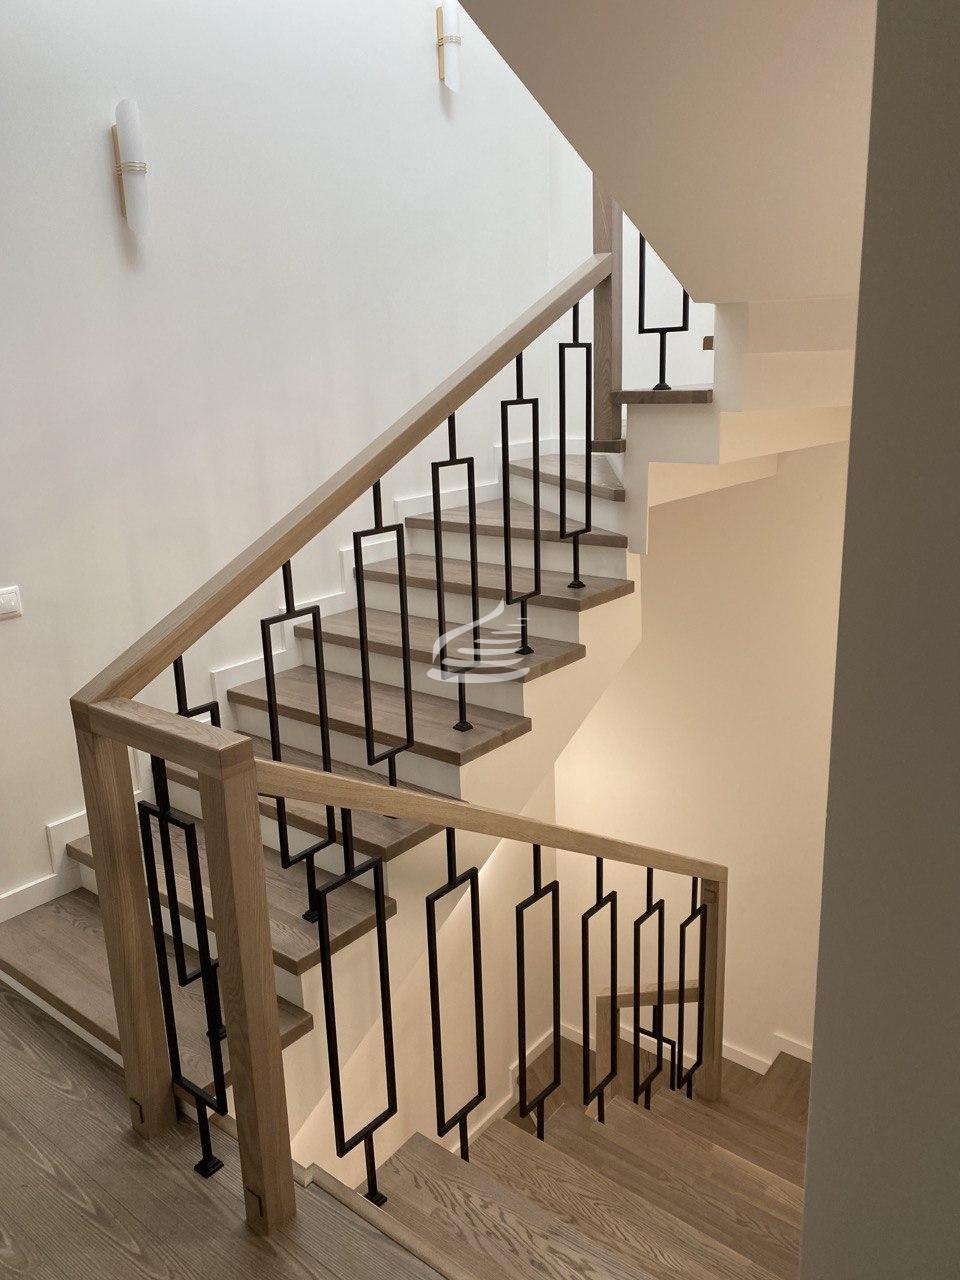 Лестница в натуральных природных оттенках Ясеня очень светлая и гармонично вписывается в интерьер, а стильный лаконичный дизайн ограждения в виде рамок, покрашенных в оттенок "чёрный муар" придаёт лестнице яркость и современность. 3 этажа.